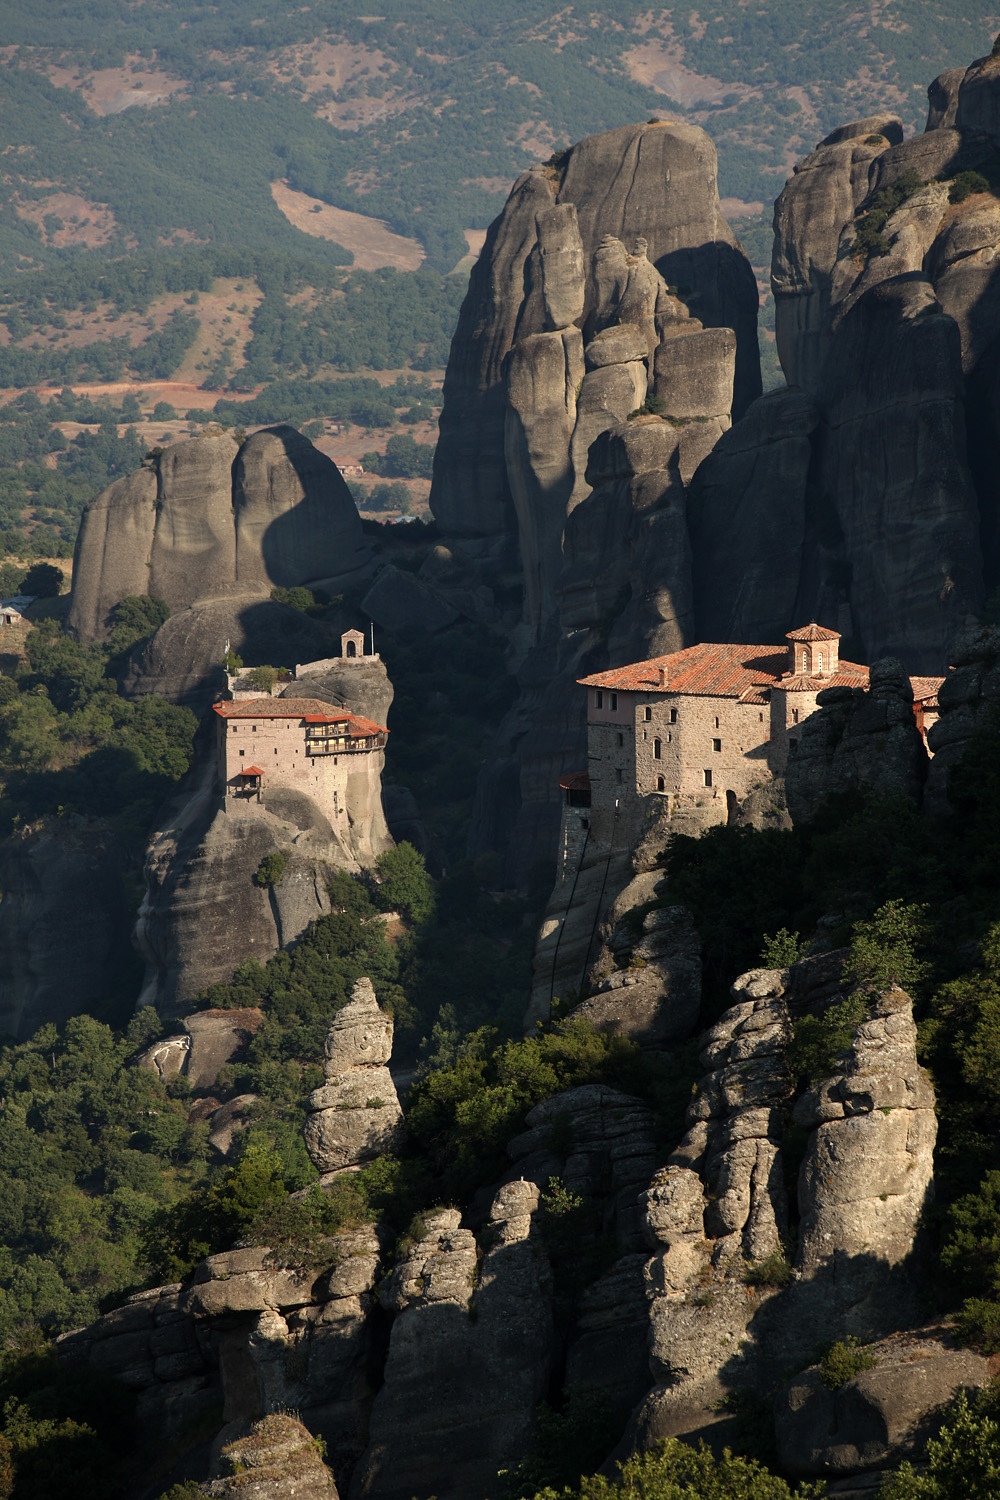 bill-hocker-monasteries-of-rousanou-and-st-nicholas-anapausas-meteora-greece-2010